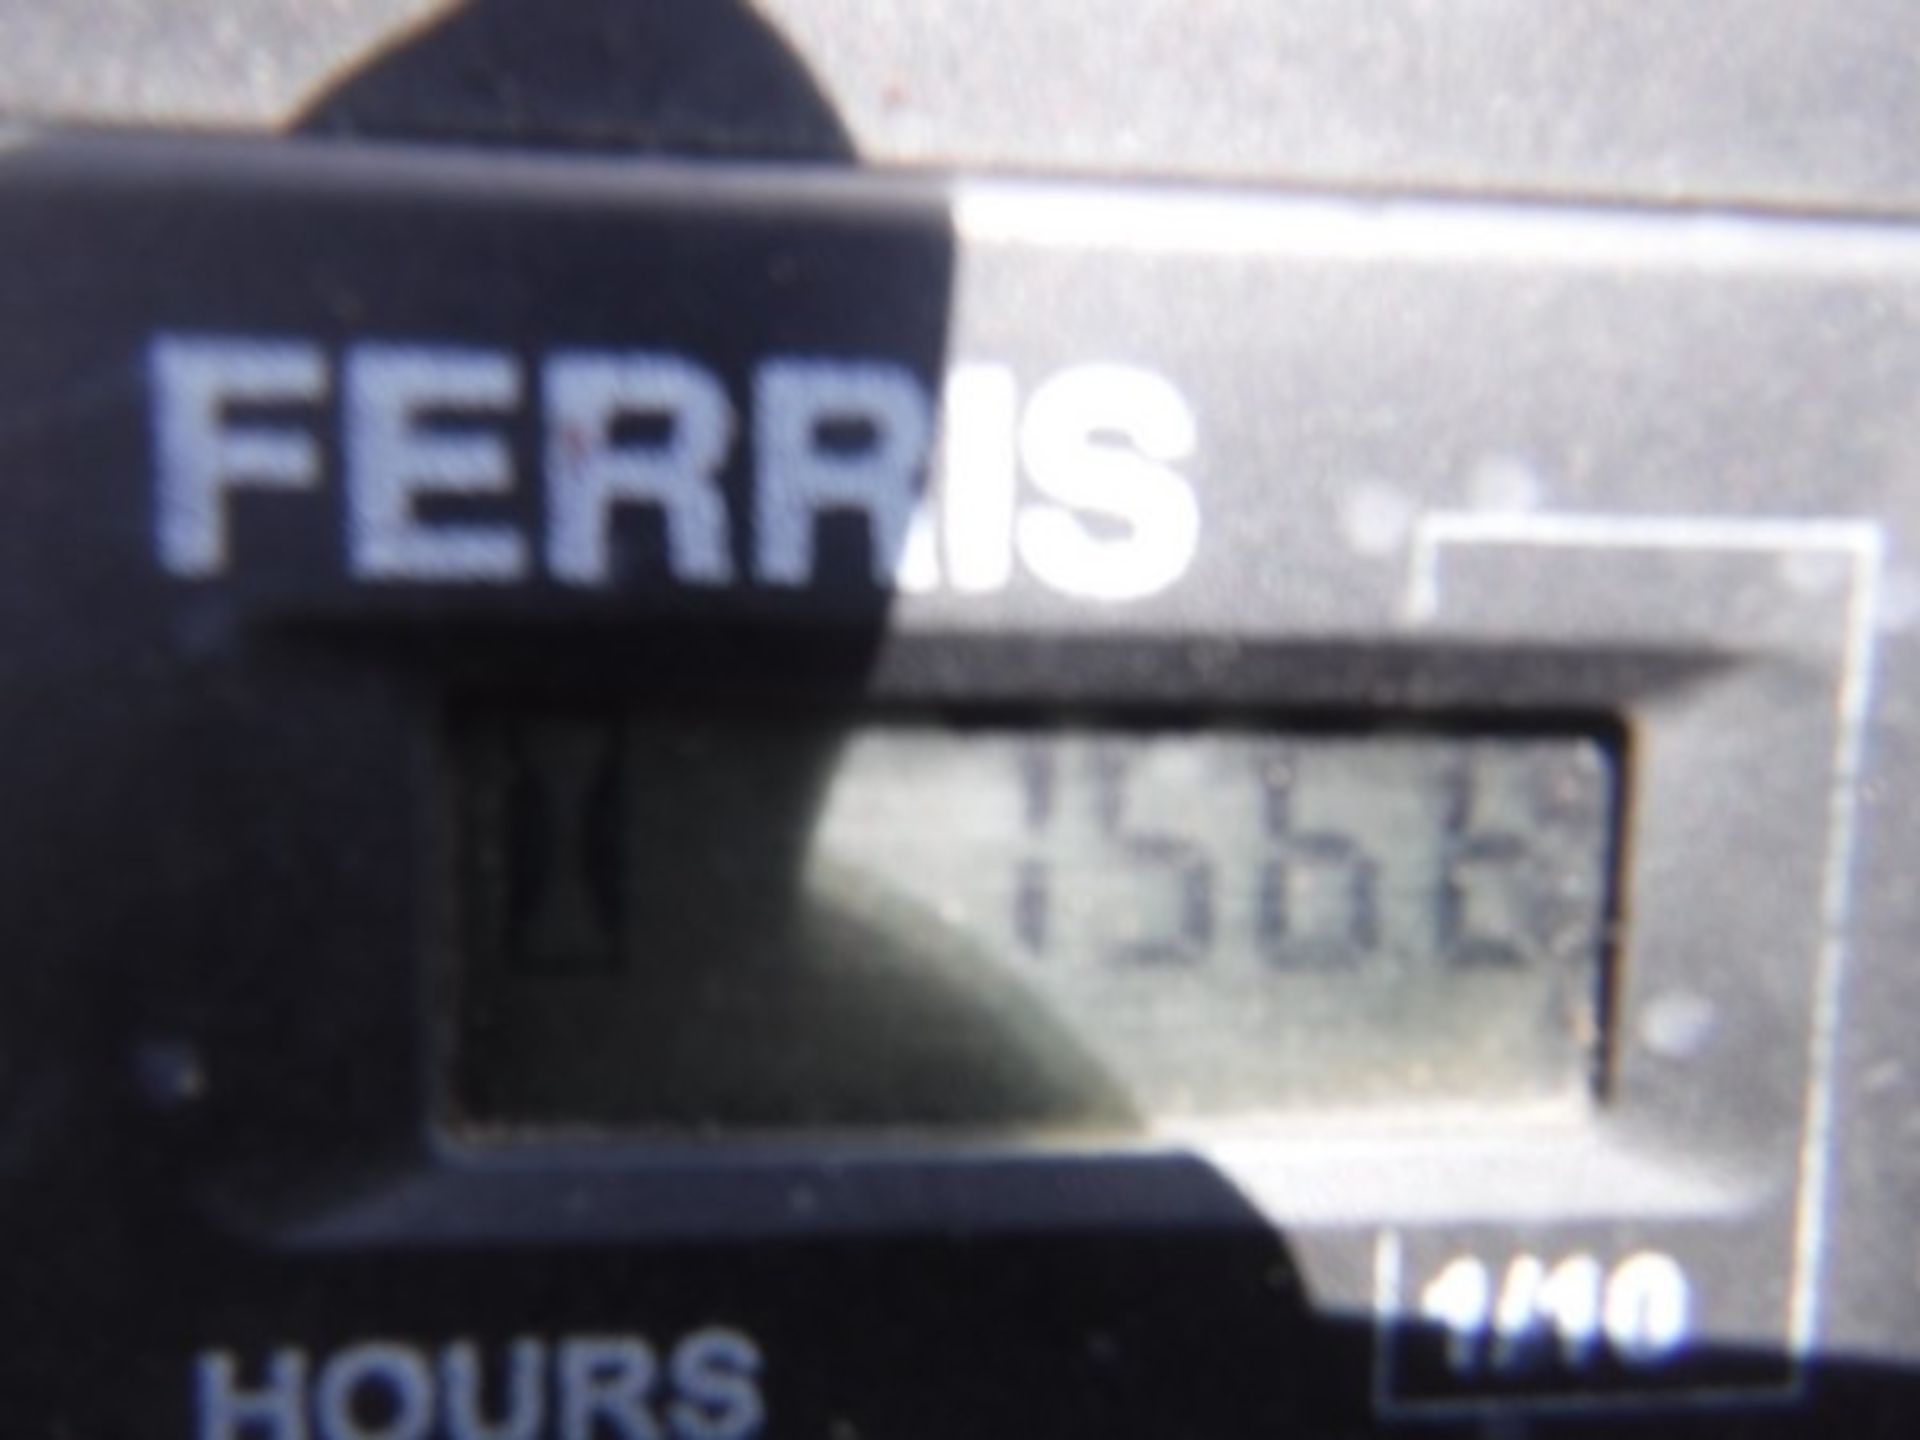 FERRIS DIESEL ZERO TURN MOWER, 756 HOURS RECORDED, 45002 CAT DIESEL ENGINE - Image 6 of 7